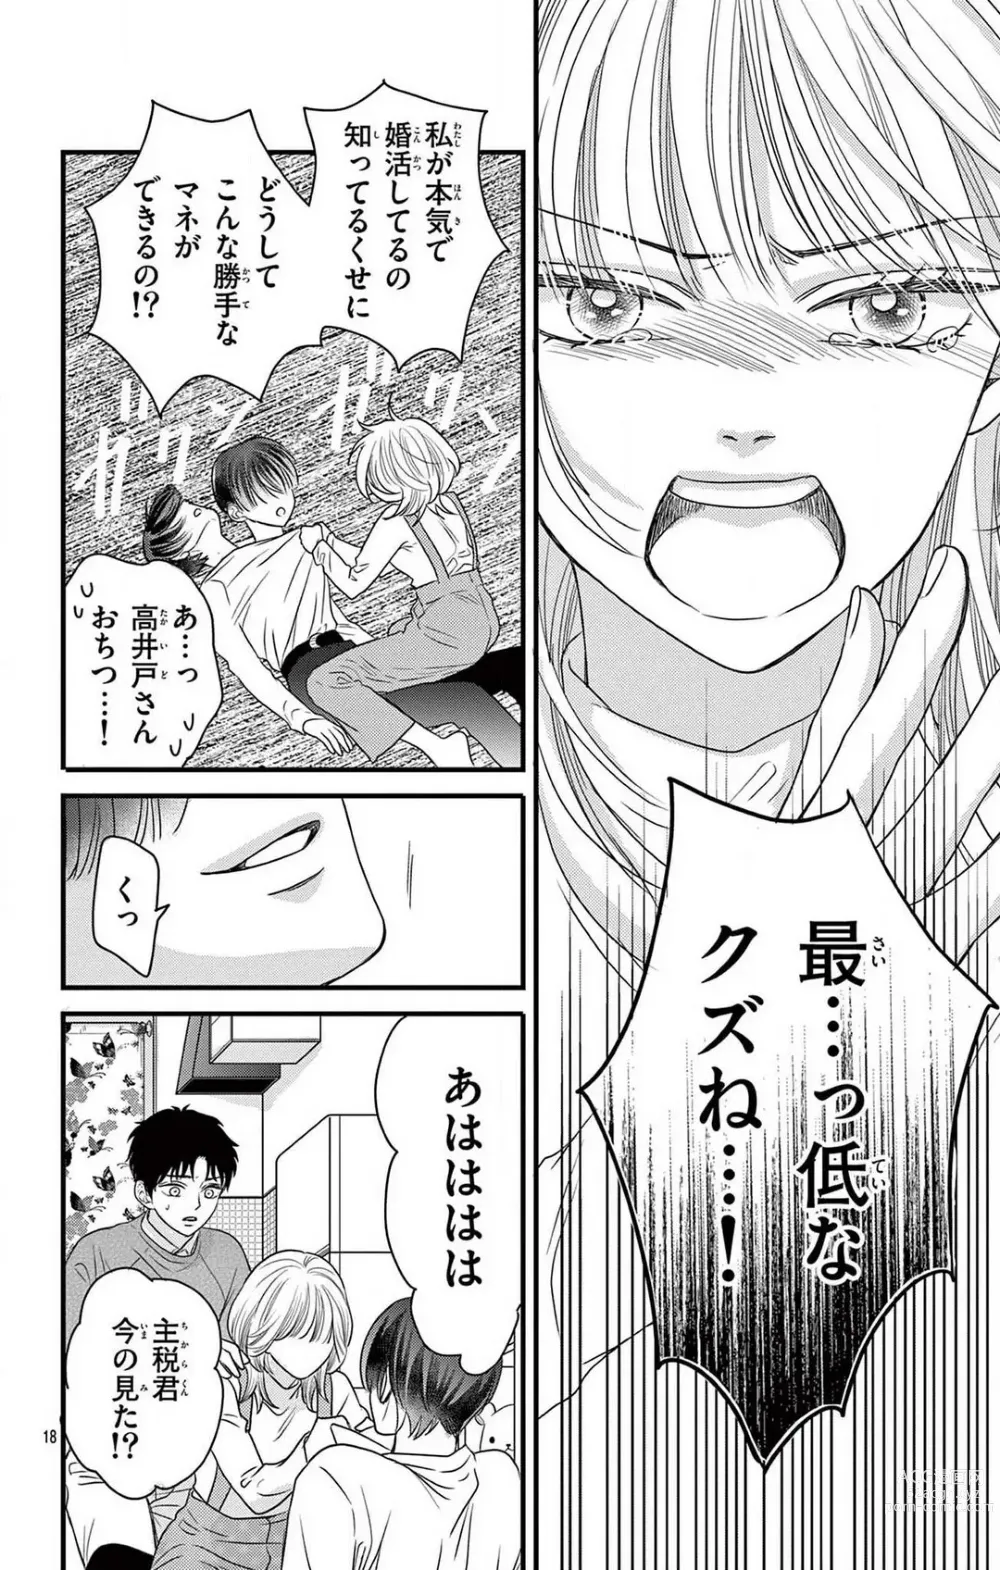 Page 224 of manga Kuzu wa Kuzu Demo Kao ga ii Kuzu 1-7